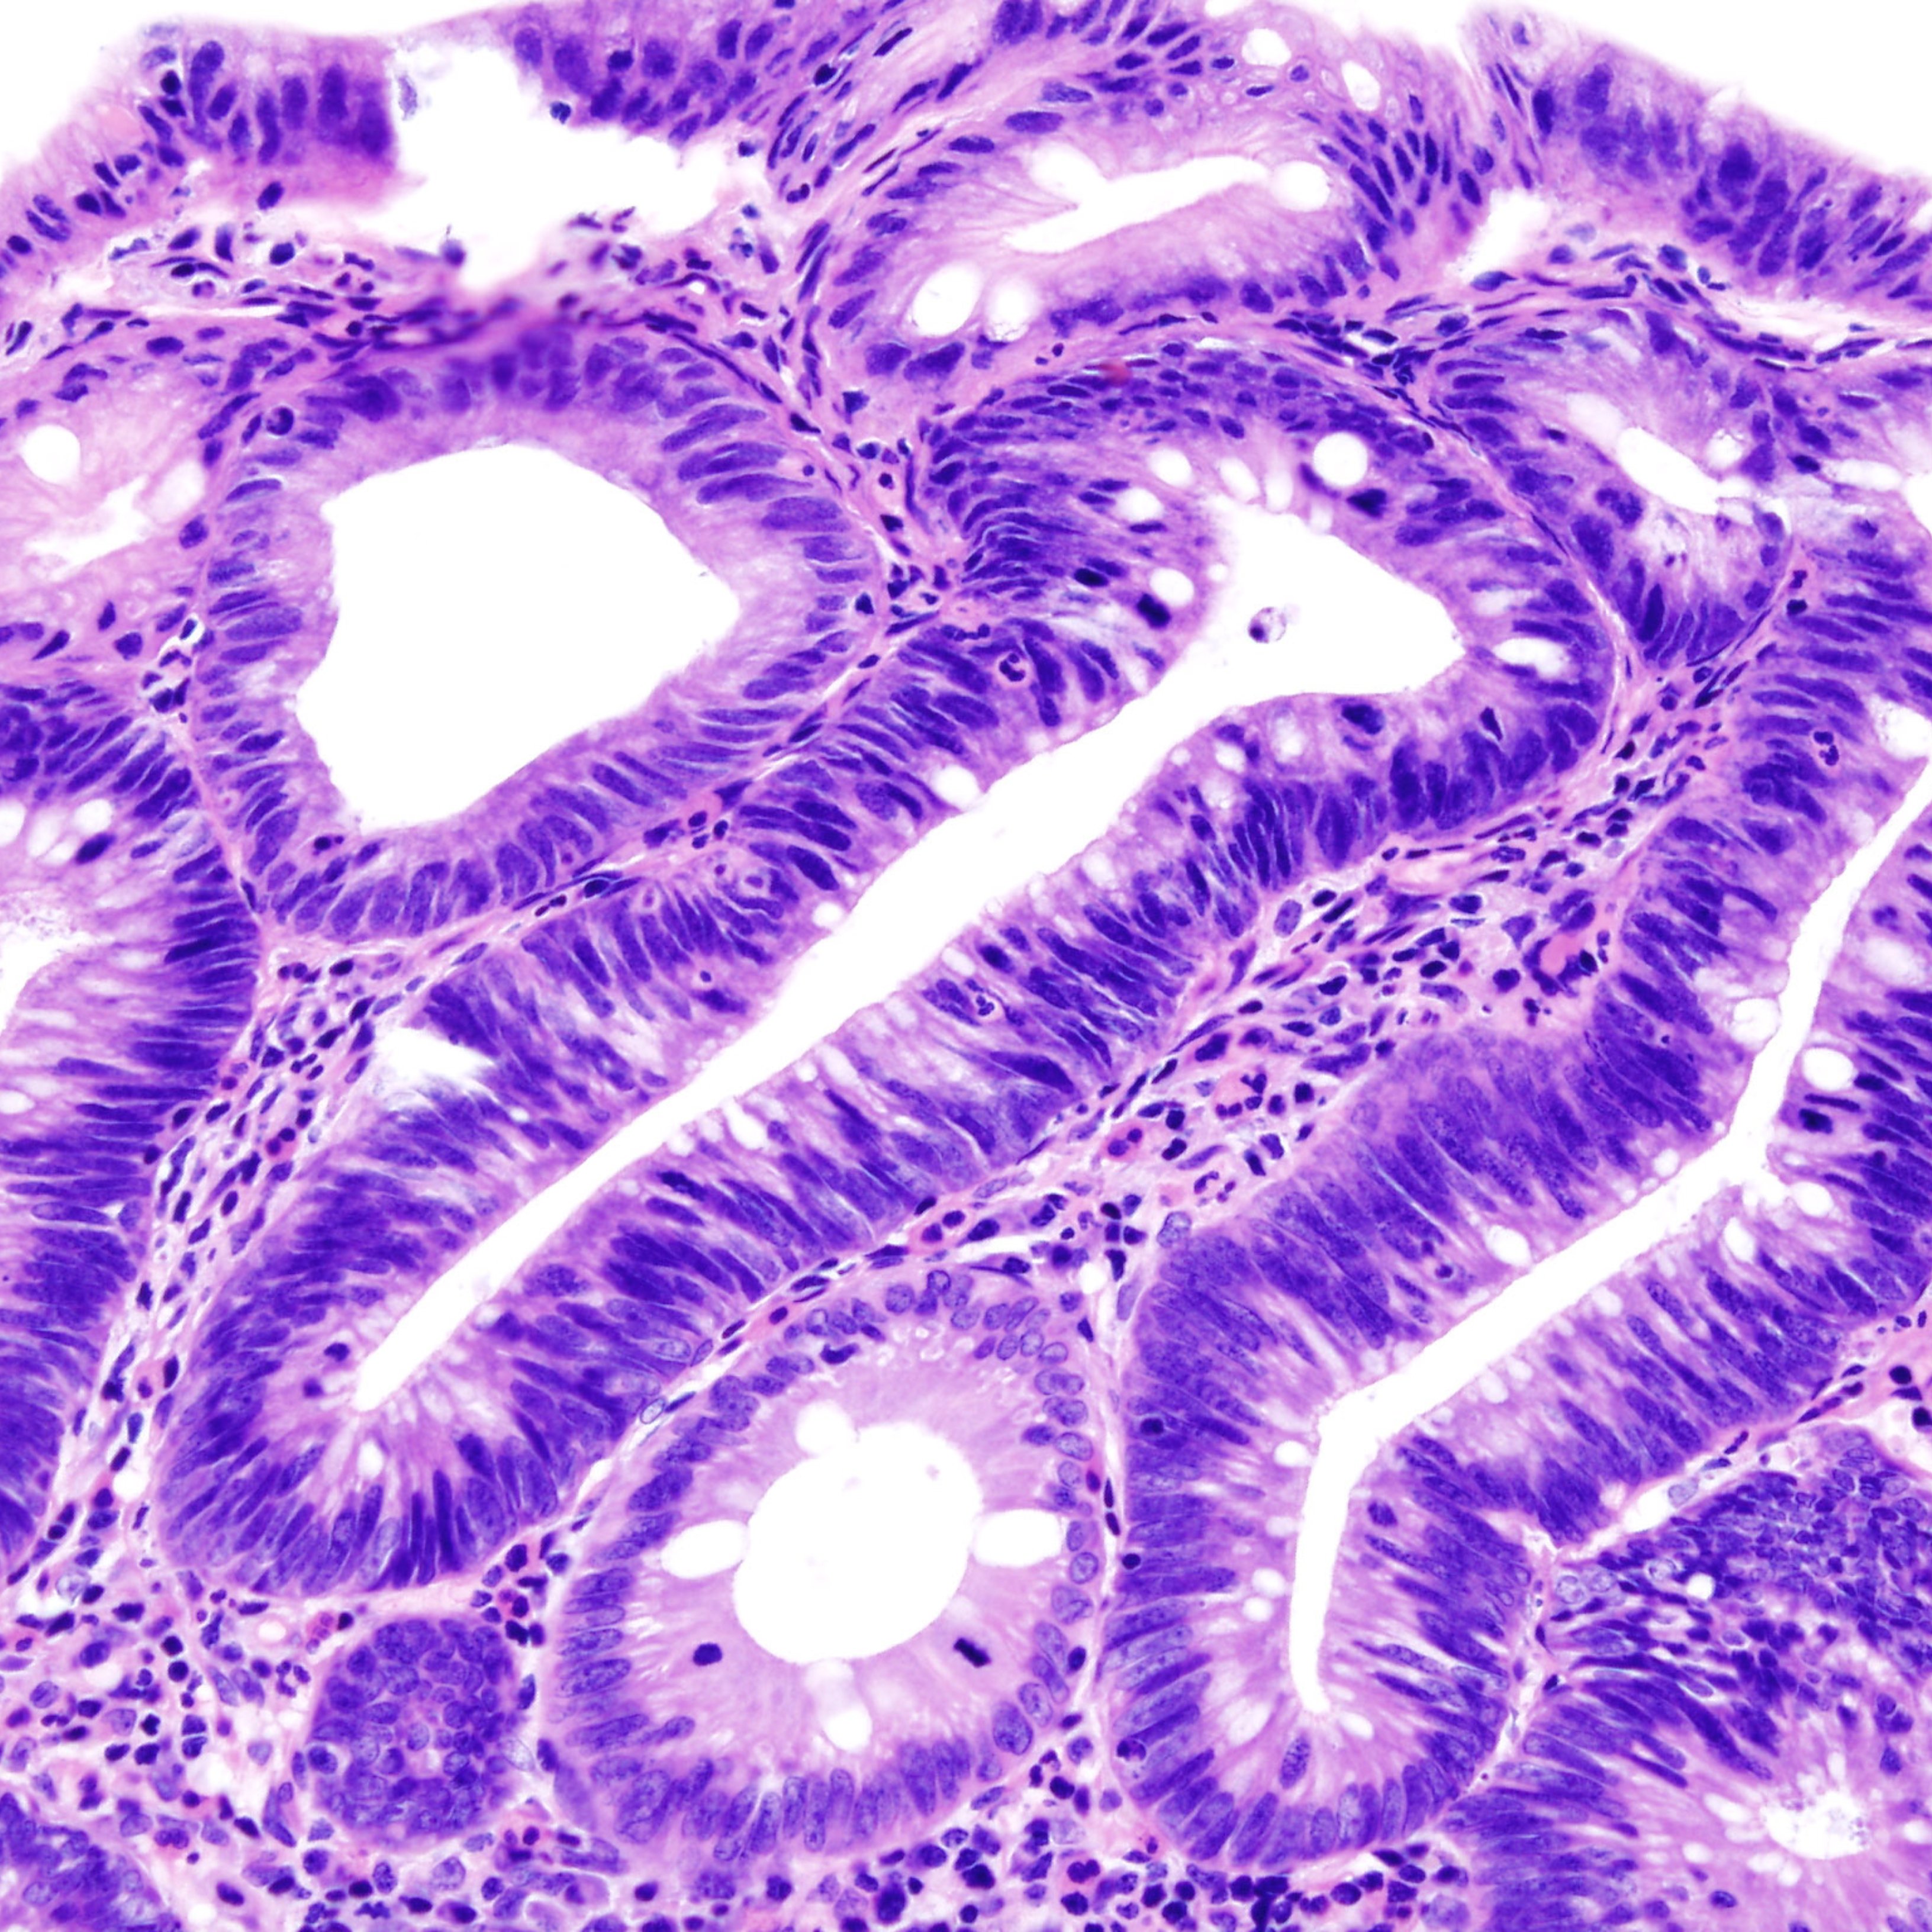 Així són els pòlips adenomatosos, els precursors del càncer de còlon